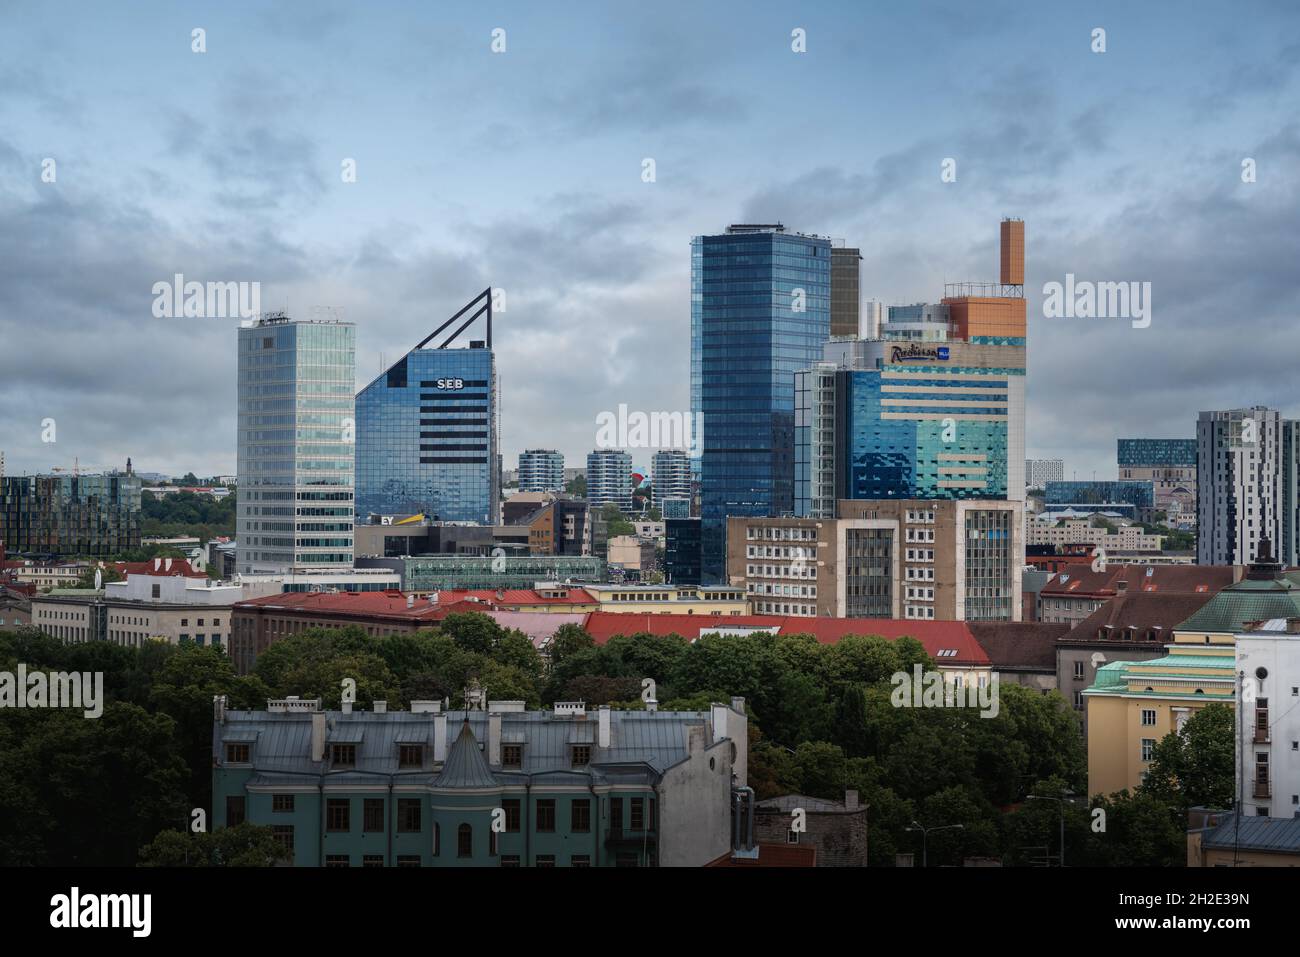 Tallinn City Centre Skyline - quartier avec bâtiments modernes - Tallinn, Estonie Banque D'Images